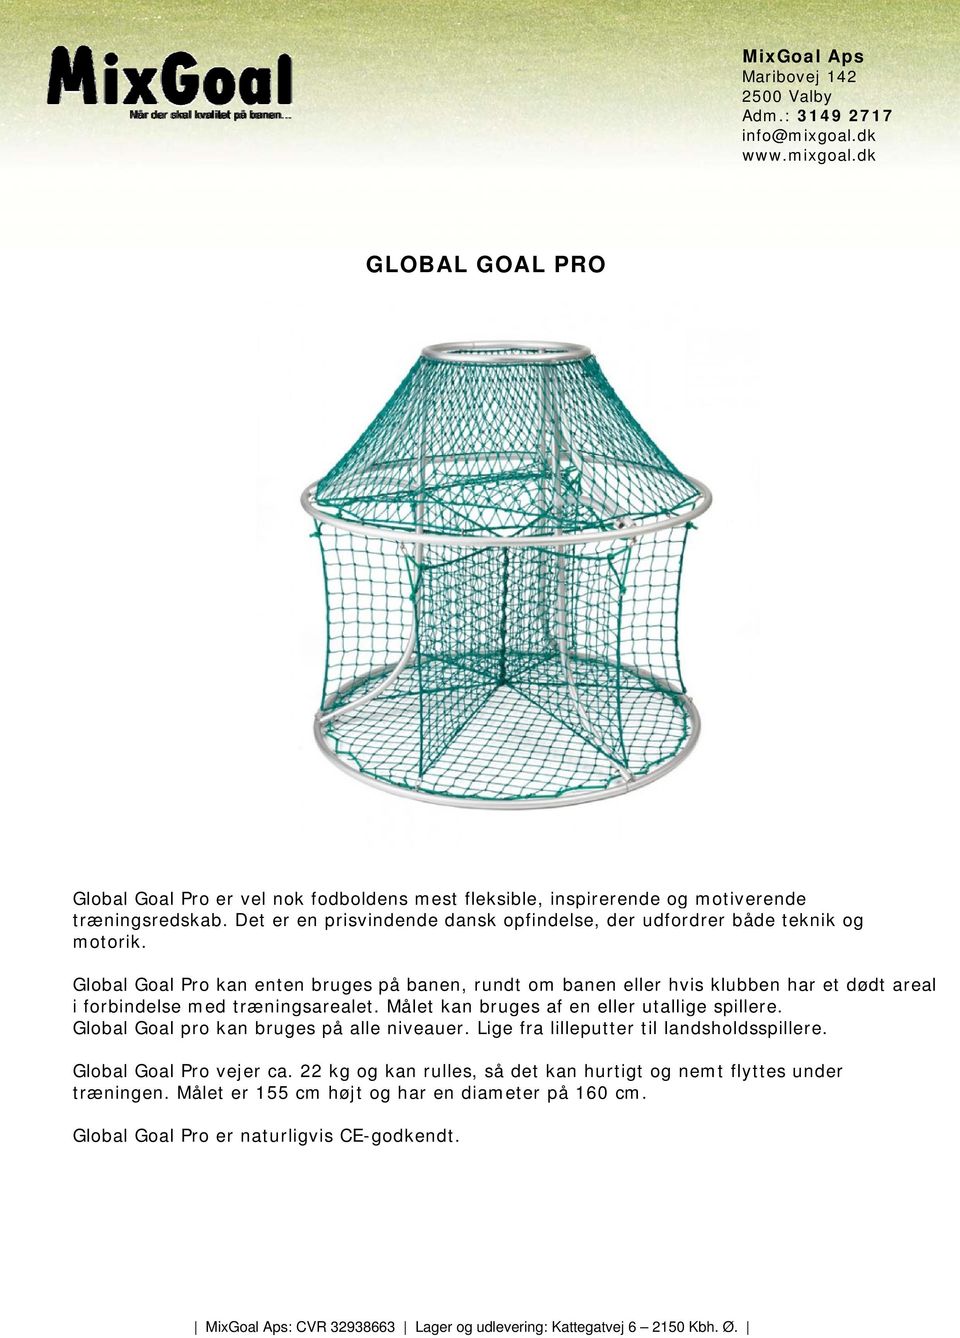 Global Goal Pro kan enten bruges på banen, rundt om banen eller hvis klubben har et dødt areal i forbindelse med træningsarealet.